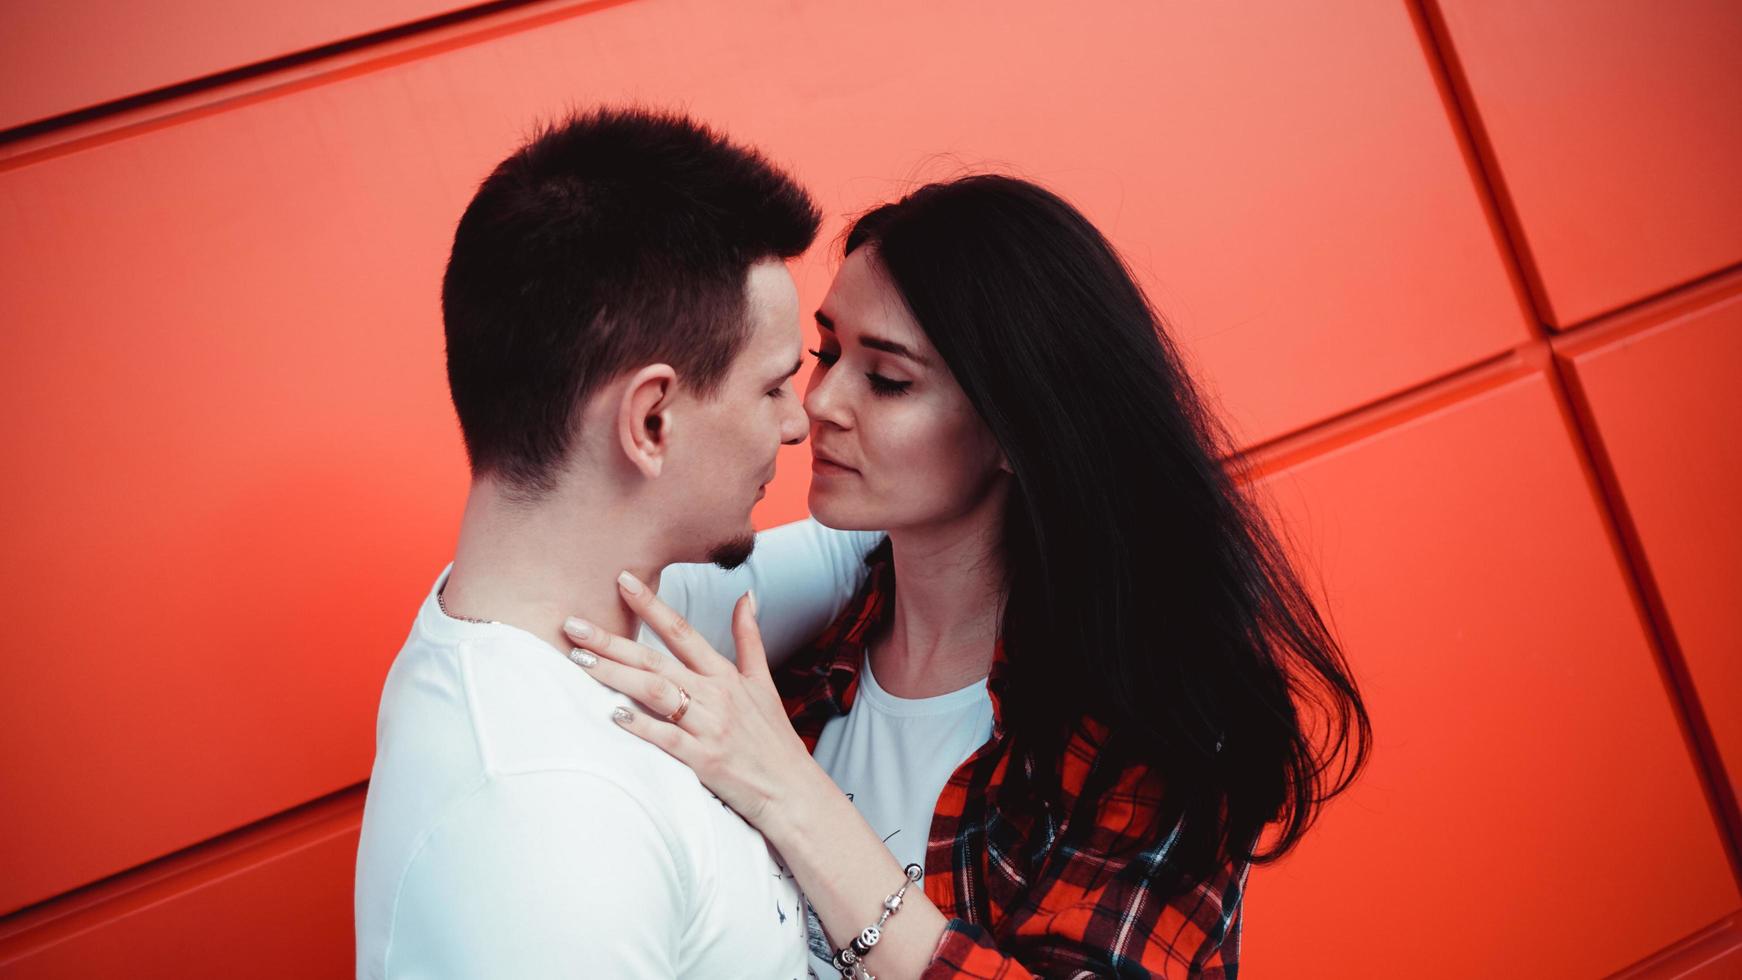 casal se beijando contra parede vermelha isolada na cidade foto